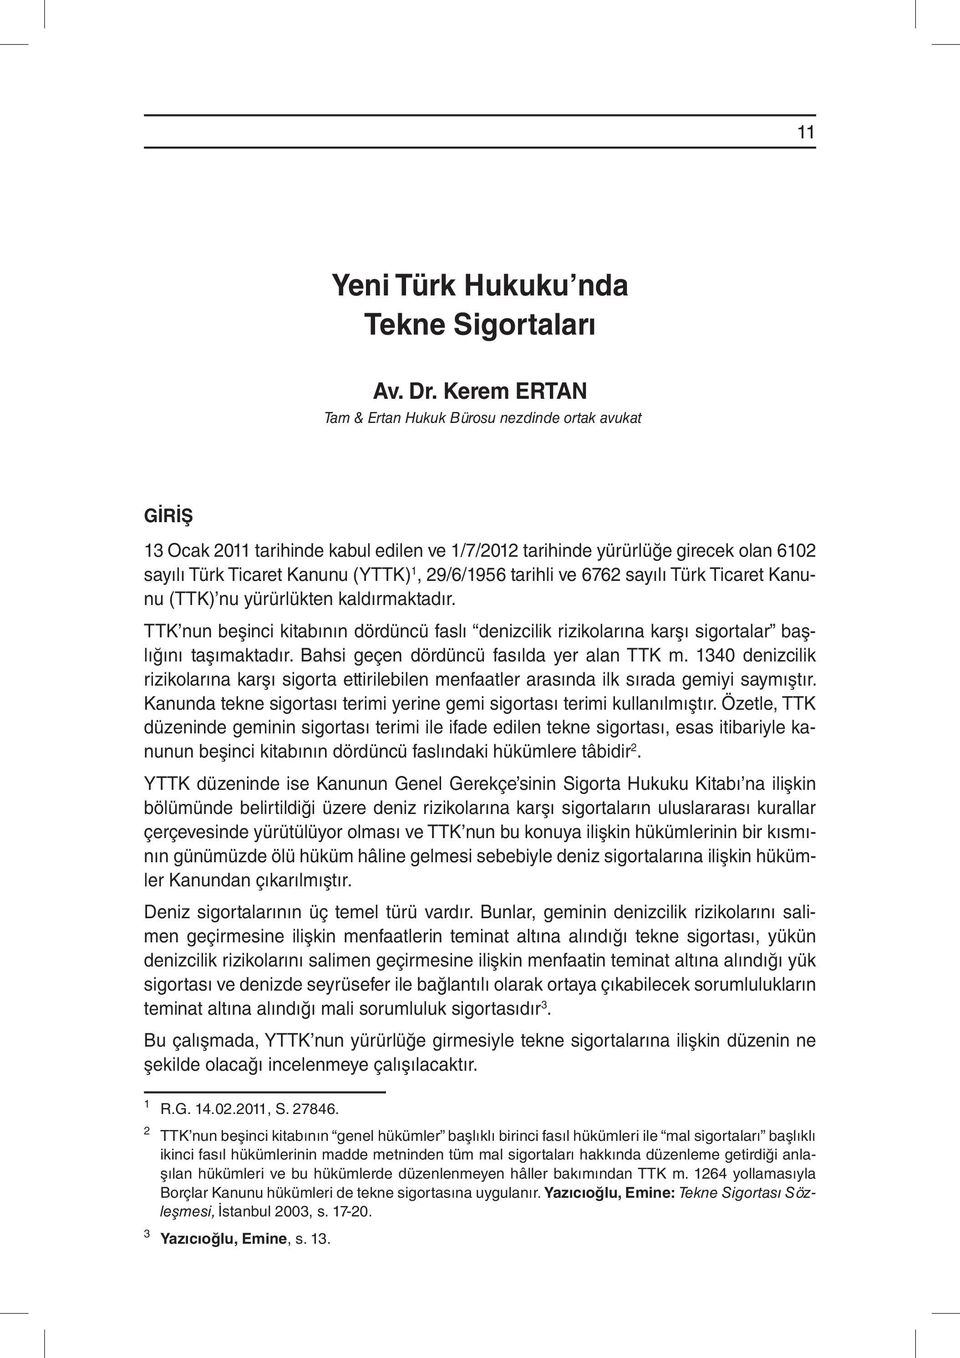 tarihli ve 6762 sayılı Türk Ticaret Kanunu (TTK) nu yürürlükten kaldırmaktadır. TTK nun beşinci kitabının dördüncü faslı denizcilik rizikolarına karşı sigortalar başlığını taşımaktadır.